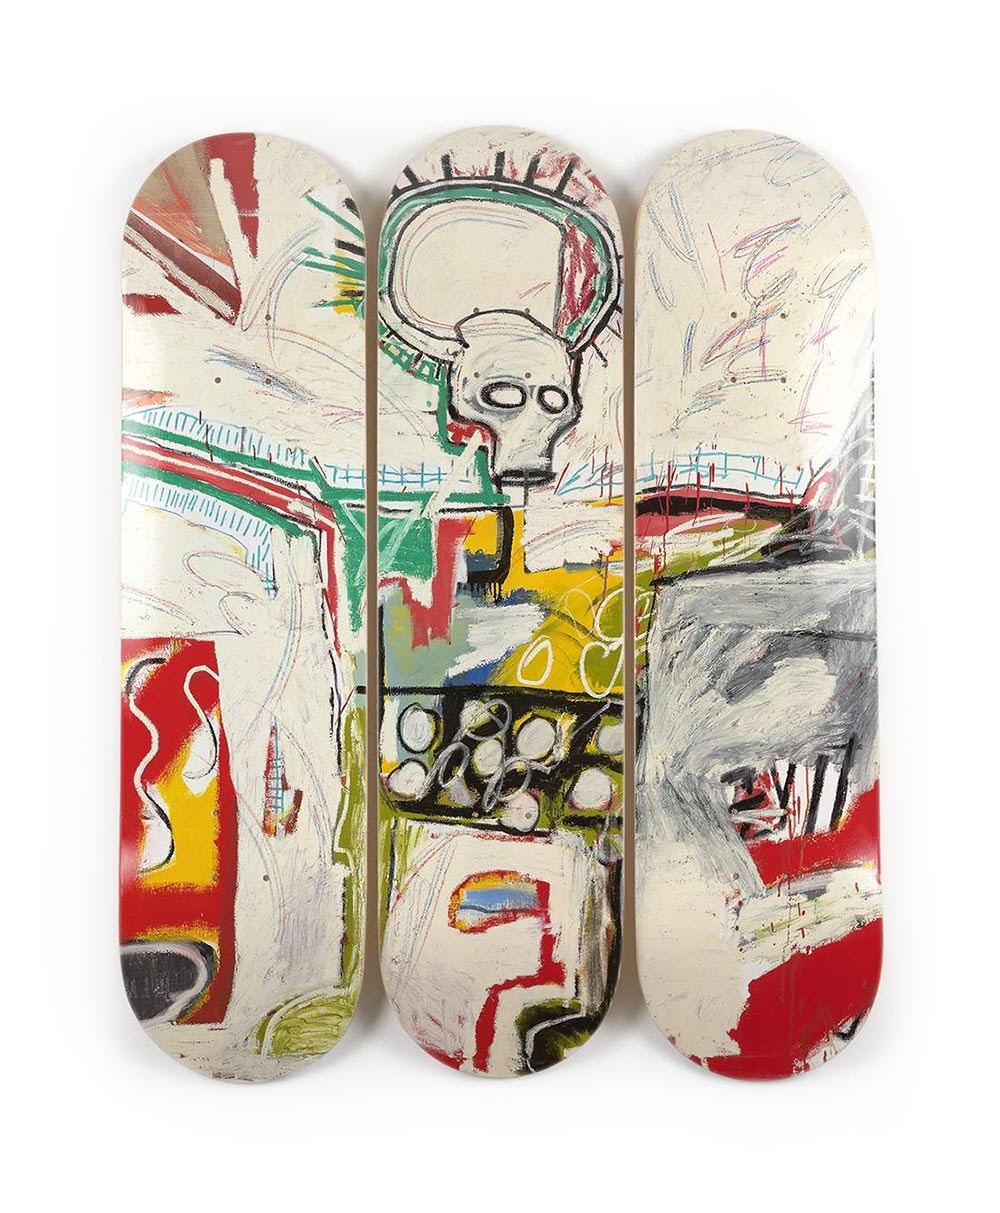 Produktbild "Untitled Rotterdam" designed by Jean-Michel Basquiat von The Skateroom im RAUM Conceptstore